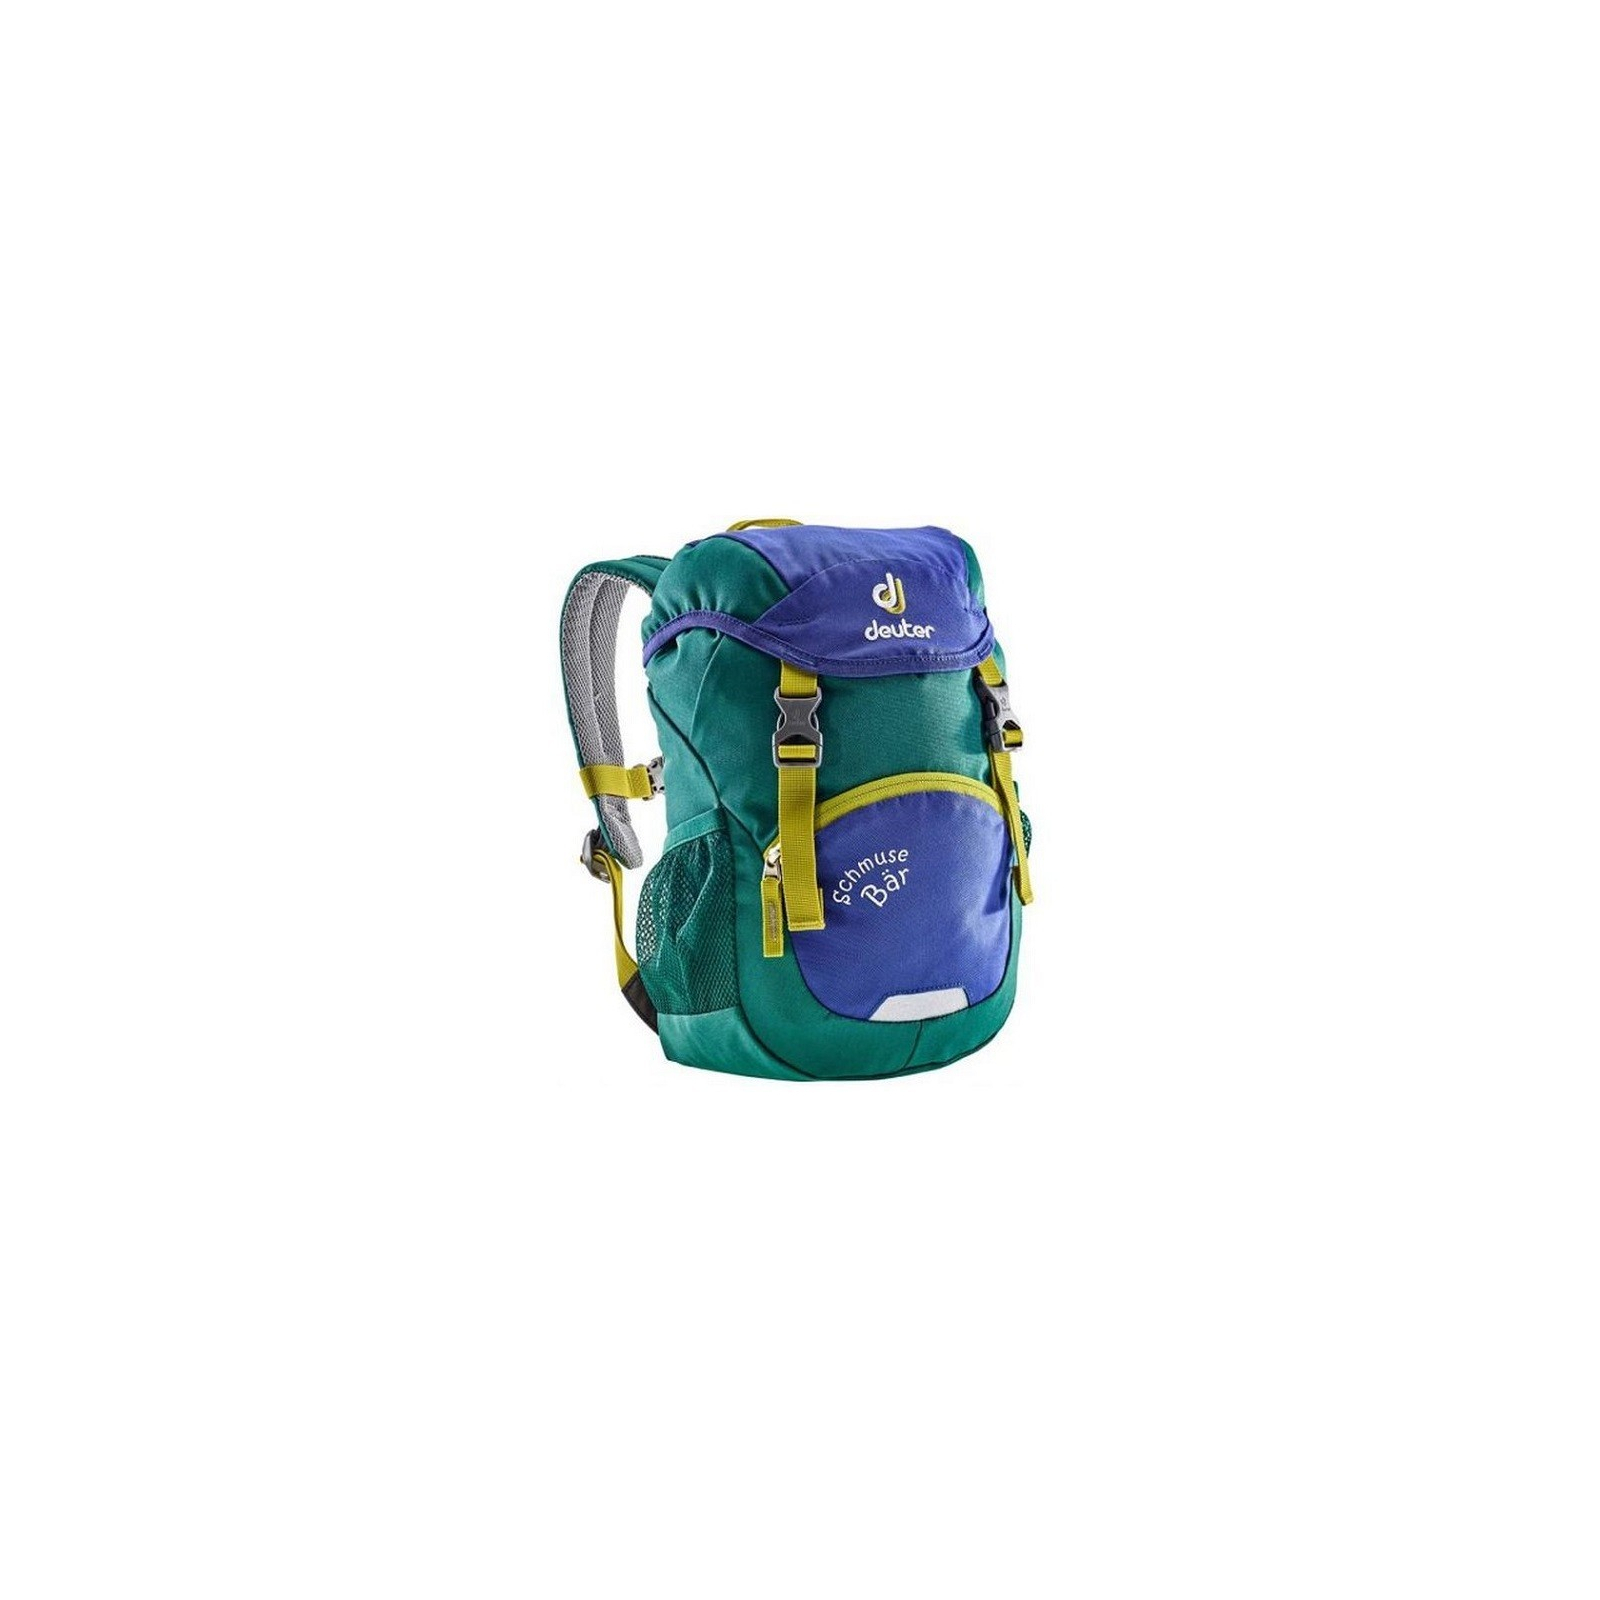 Рюкзак школьный Deuter Schmusebar 3232 indigo-alpinegreen (3612017 3232)